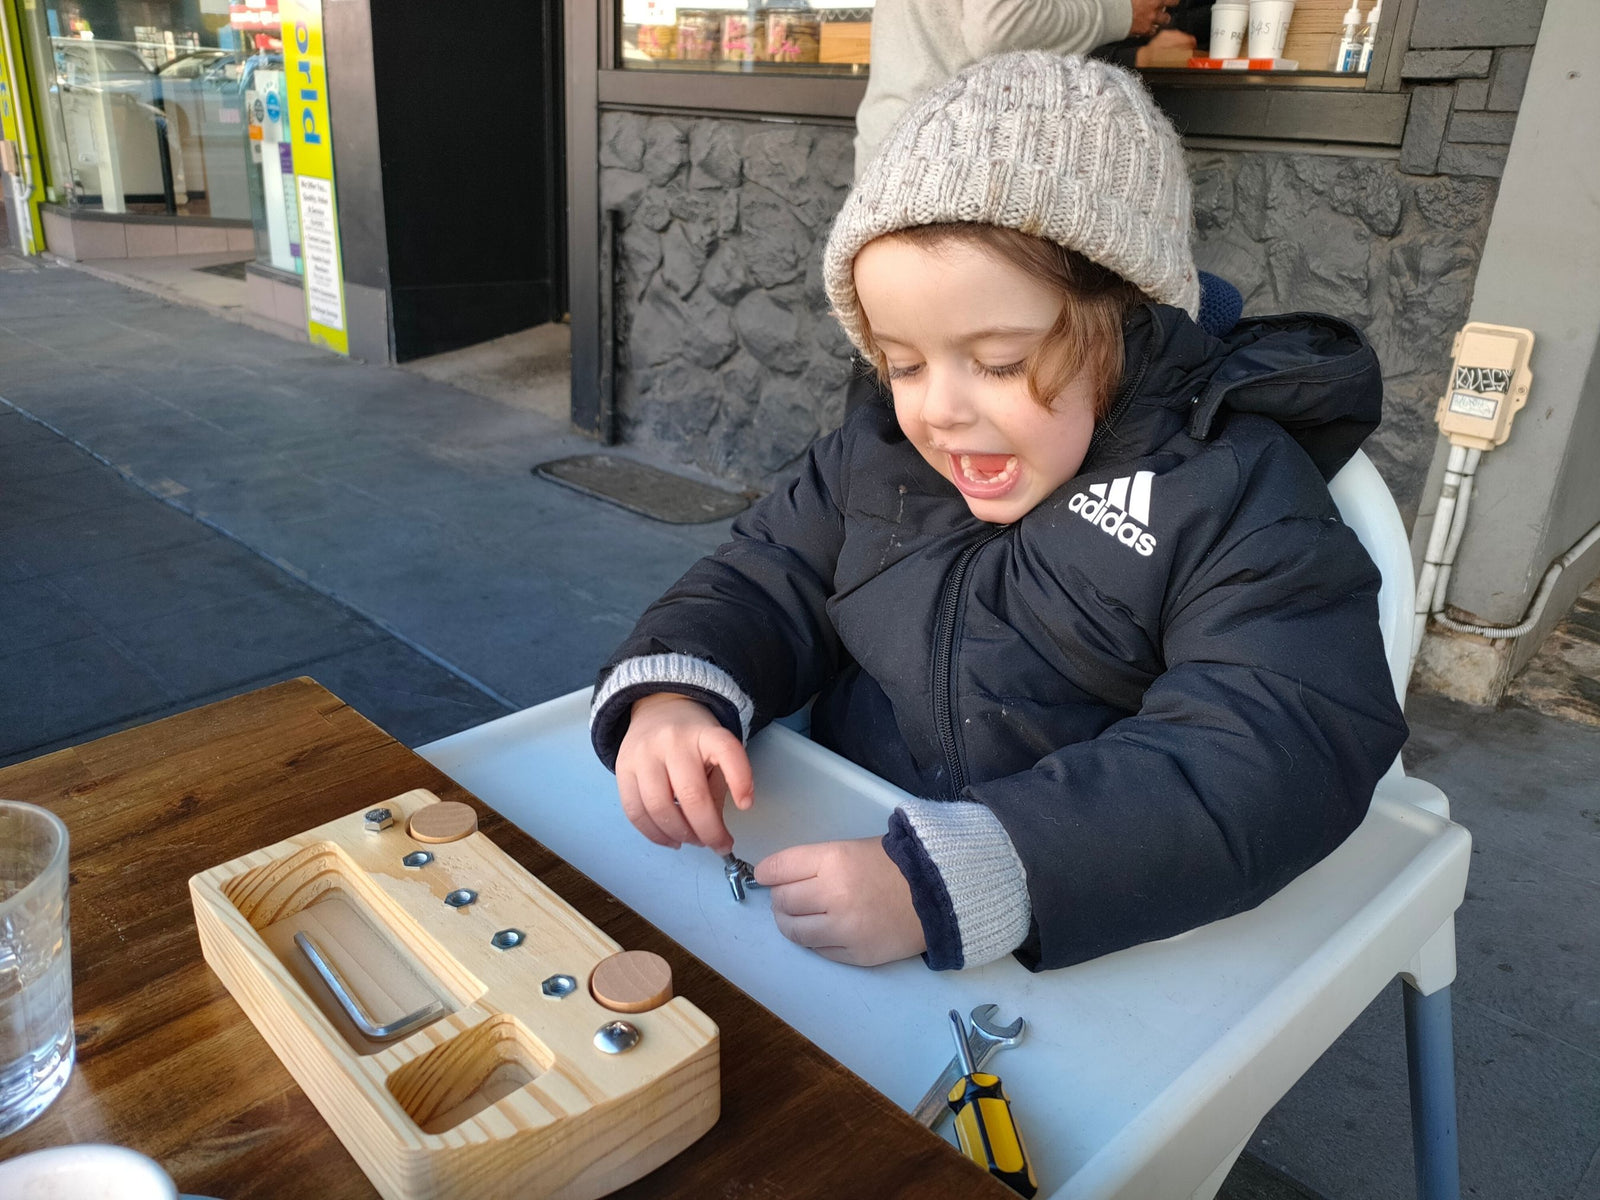 Montessori Screw Driver Board Kids Montessori Materials - Axel Adventures